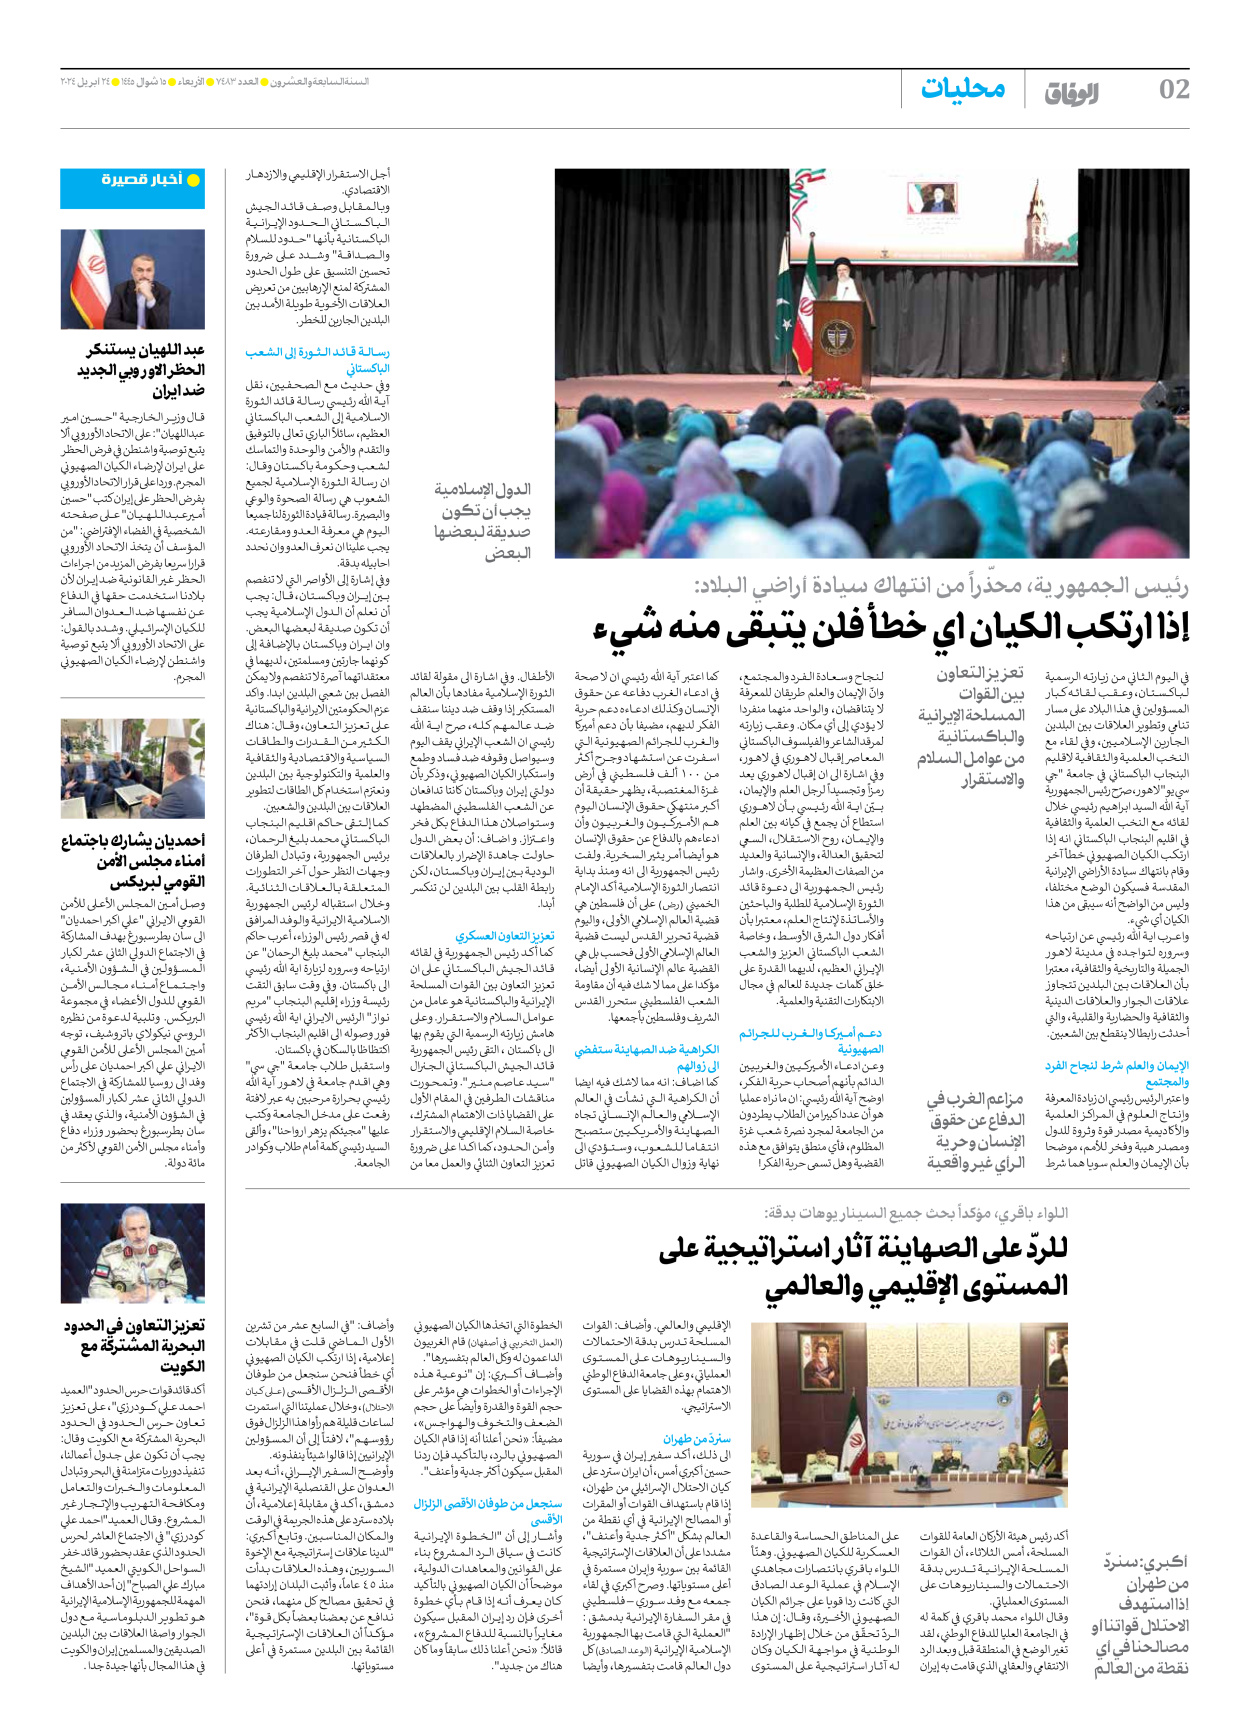 صحیفة ایران الدولیة الوفاق - العدد سبعة آلاف وأربعمائة وثلاثة وثمانون - ٢٤ أبريل ٢٠٢٤ - الصفحة ۲